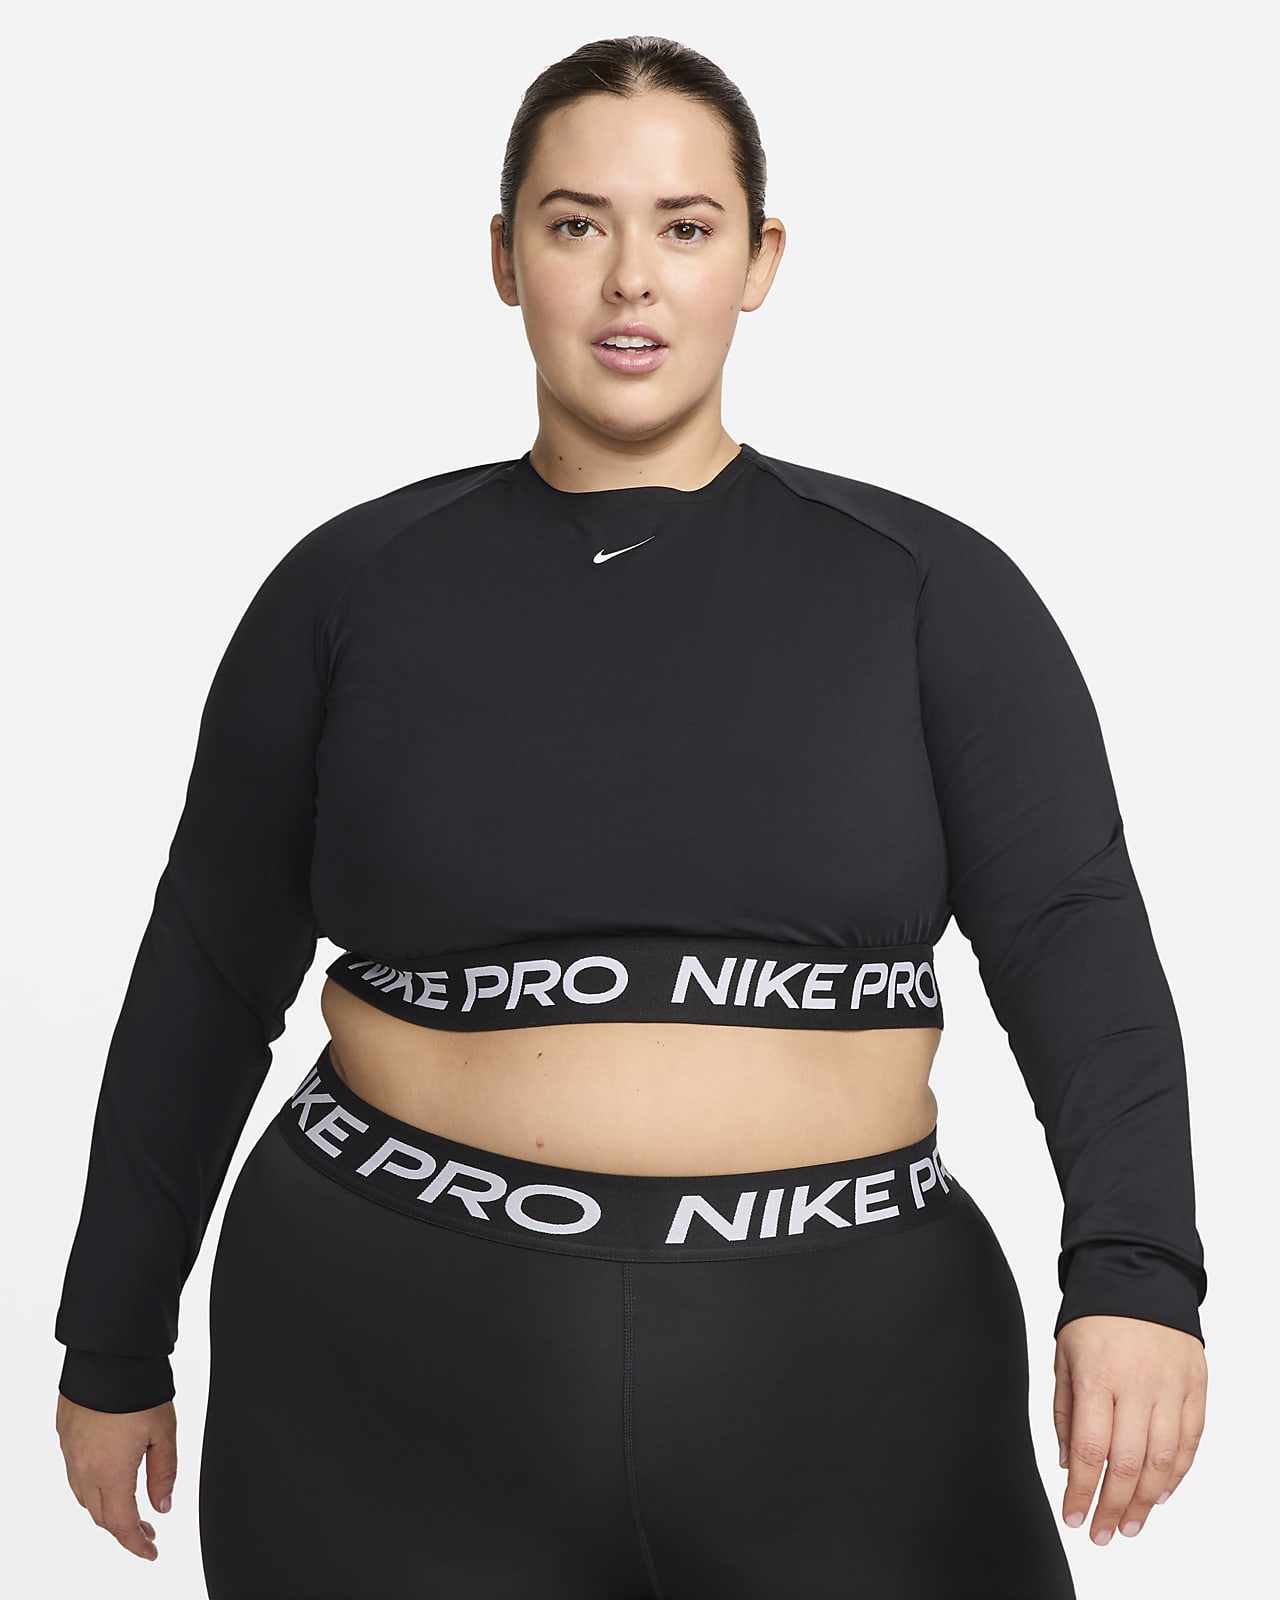 Nike Pro 365 Dri-FIT rövid szabású, hosszú ujjú női felső (plus size méret)